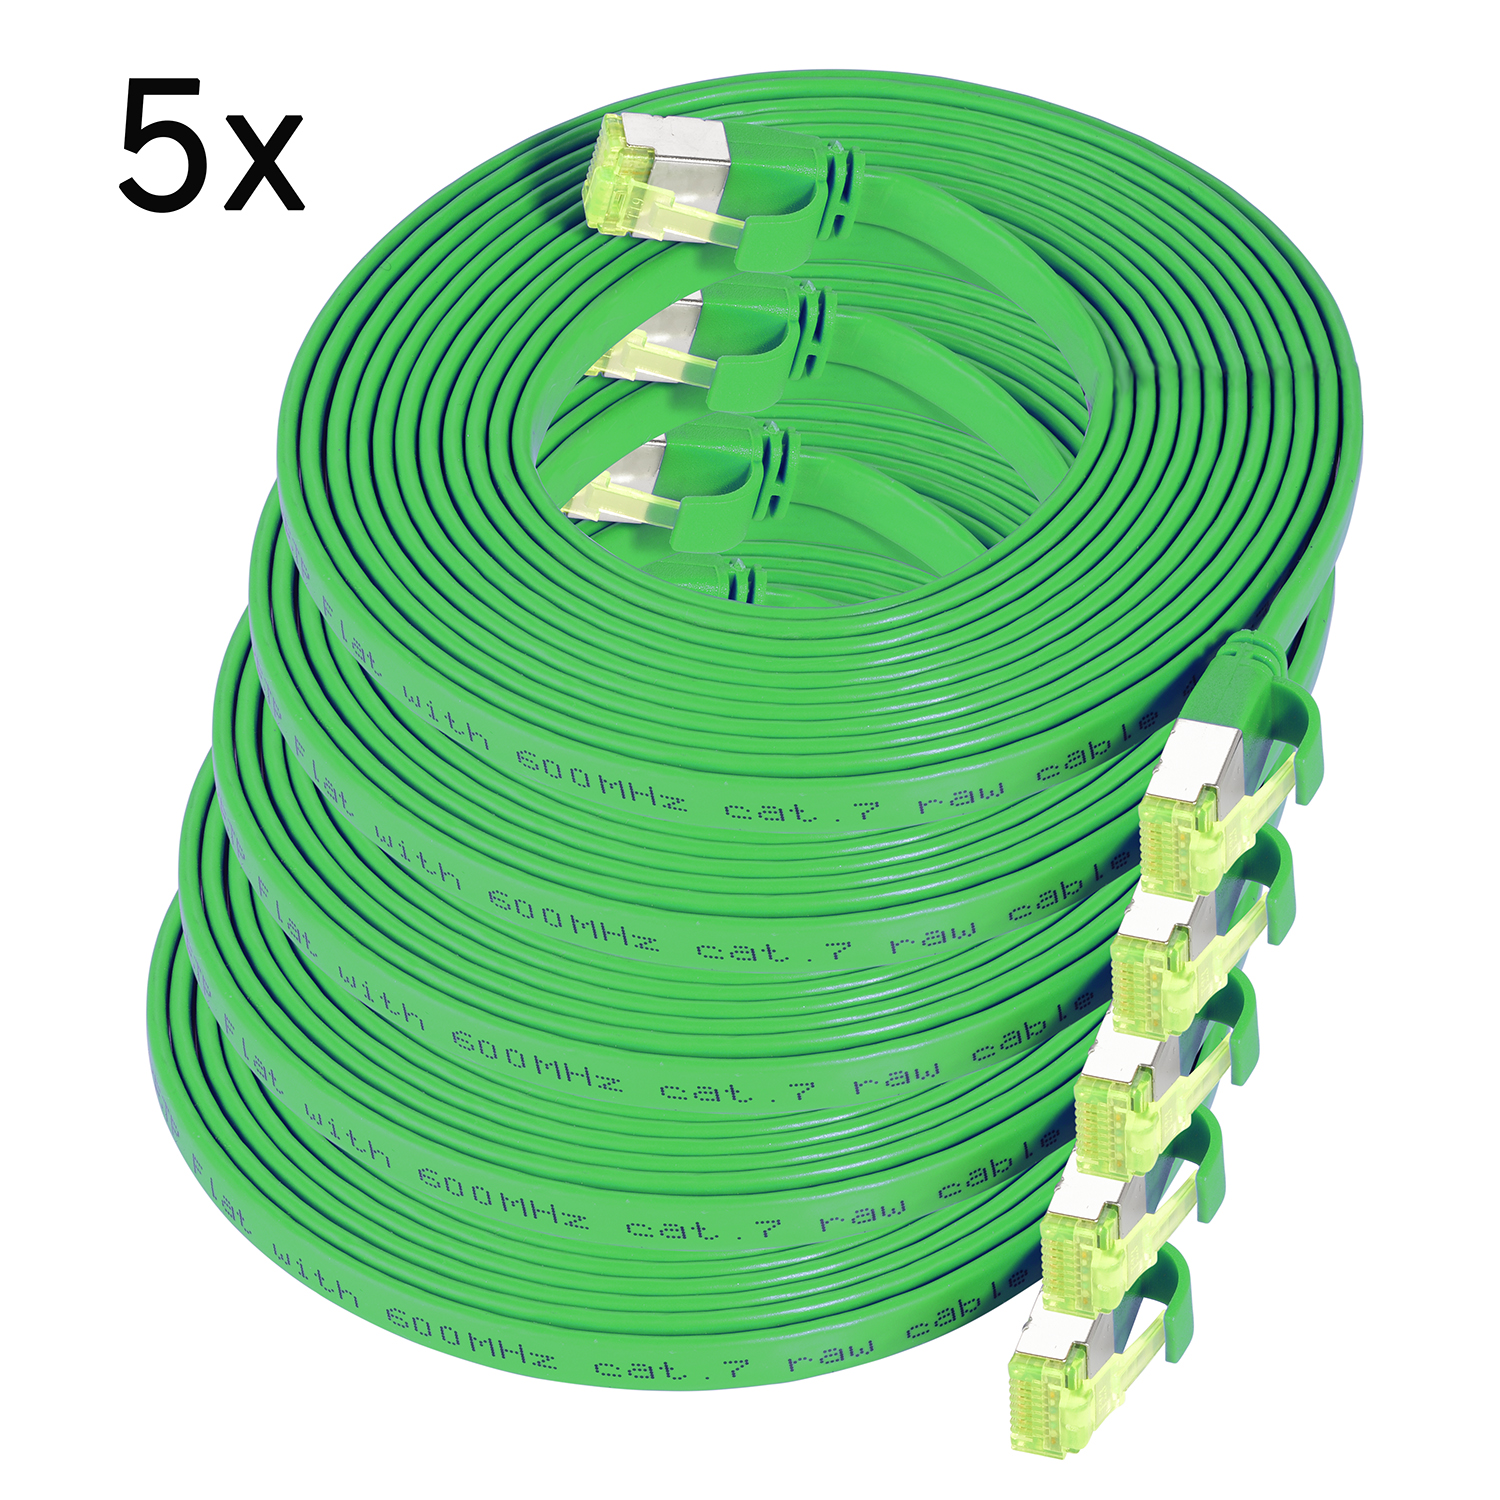 TPFNET 5er GBit, 7,5m Flachkabel Patchkabel m 7,5 Pack / grün, Netzwerkkabel, U/FTP 10